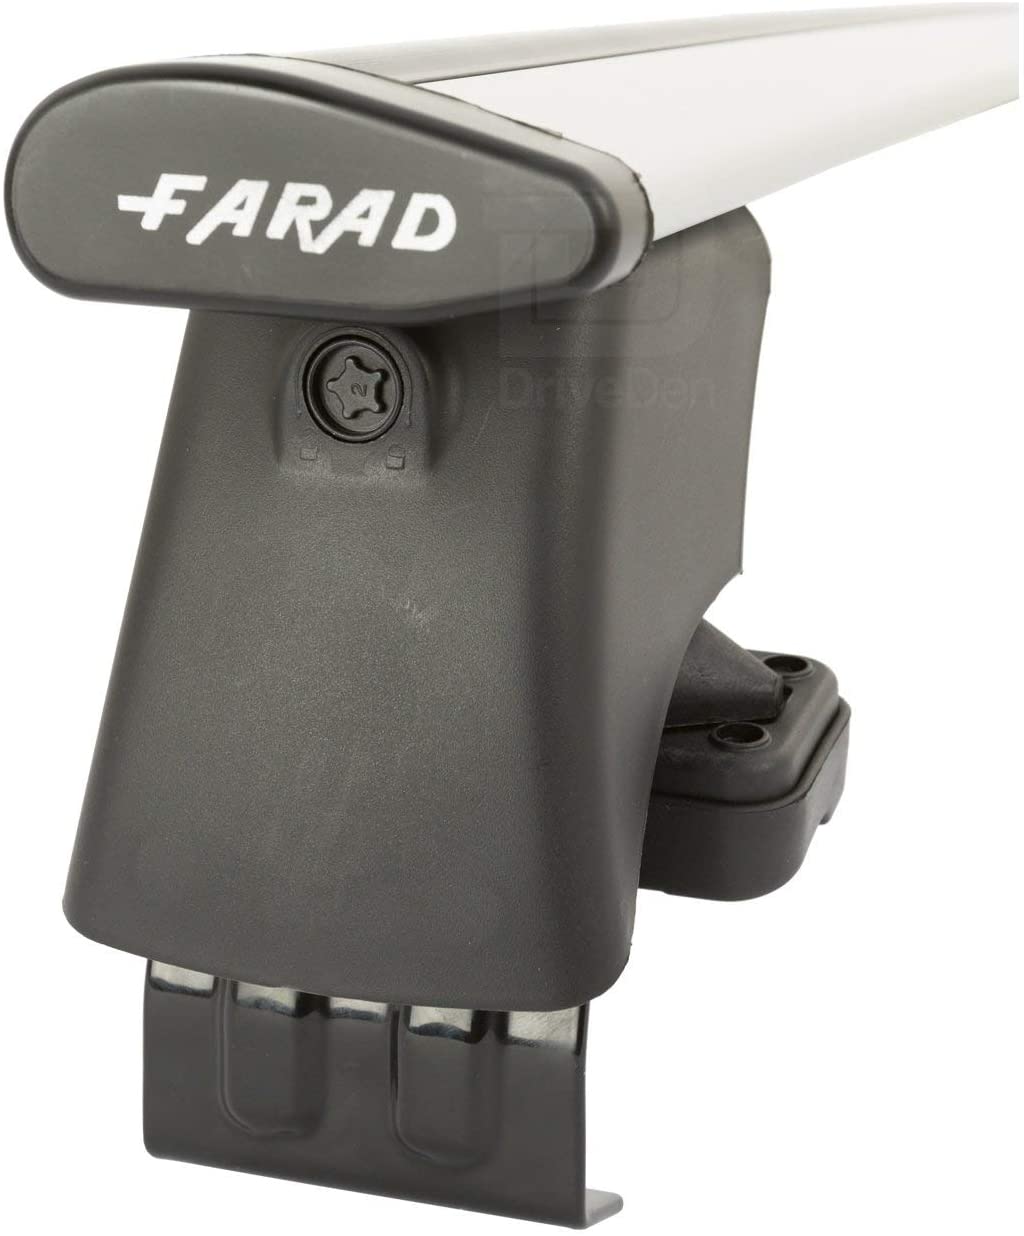 FARAD-Kit H2 per barre portatutto - Audi A4 2007-2016 (senza corrimano)